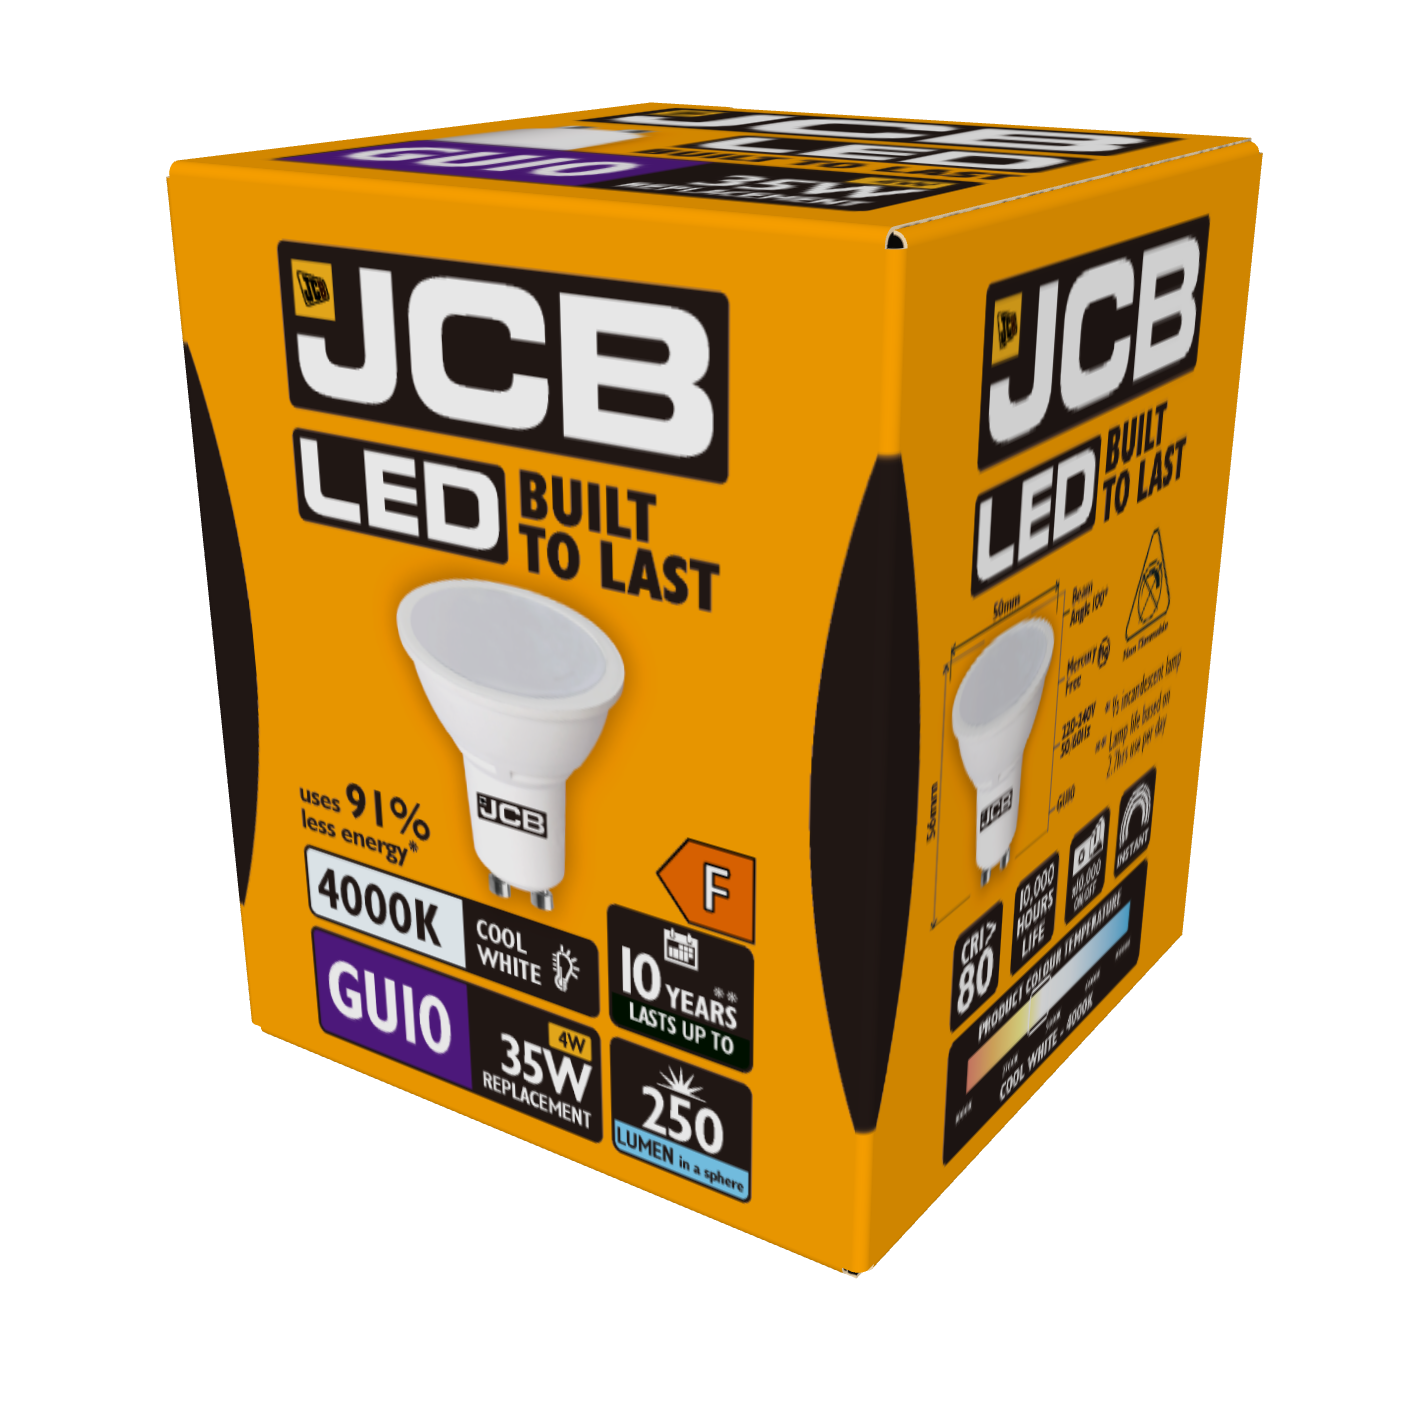 JCB LED GU10 230lm 3W 4,000K (Cool White), Box of 1